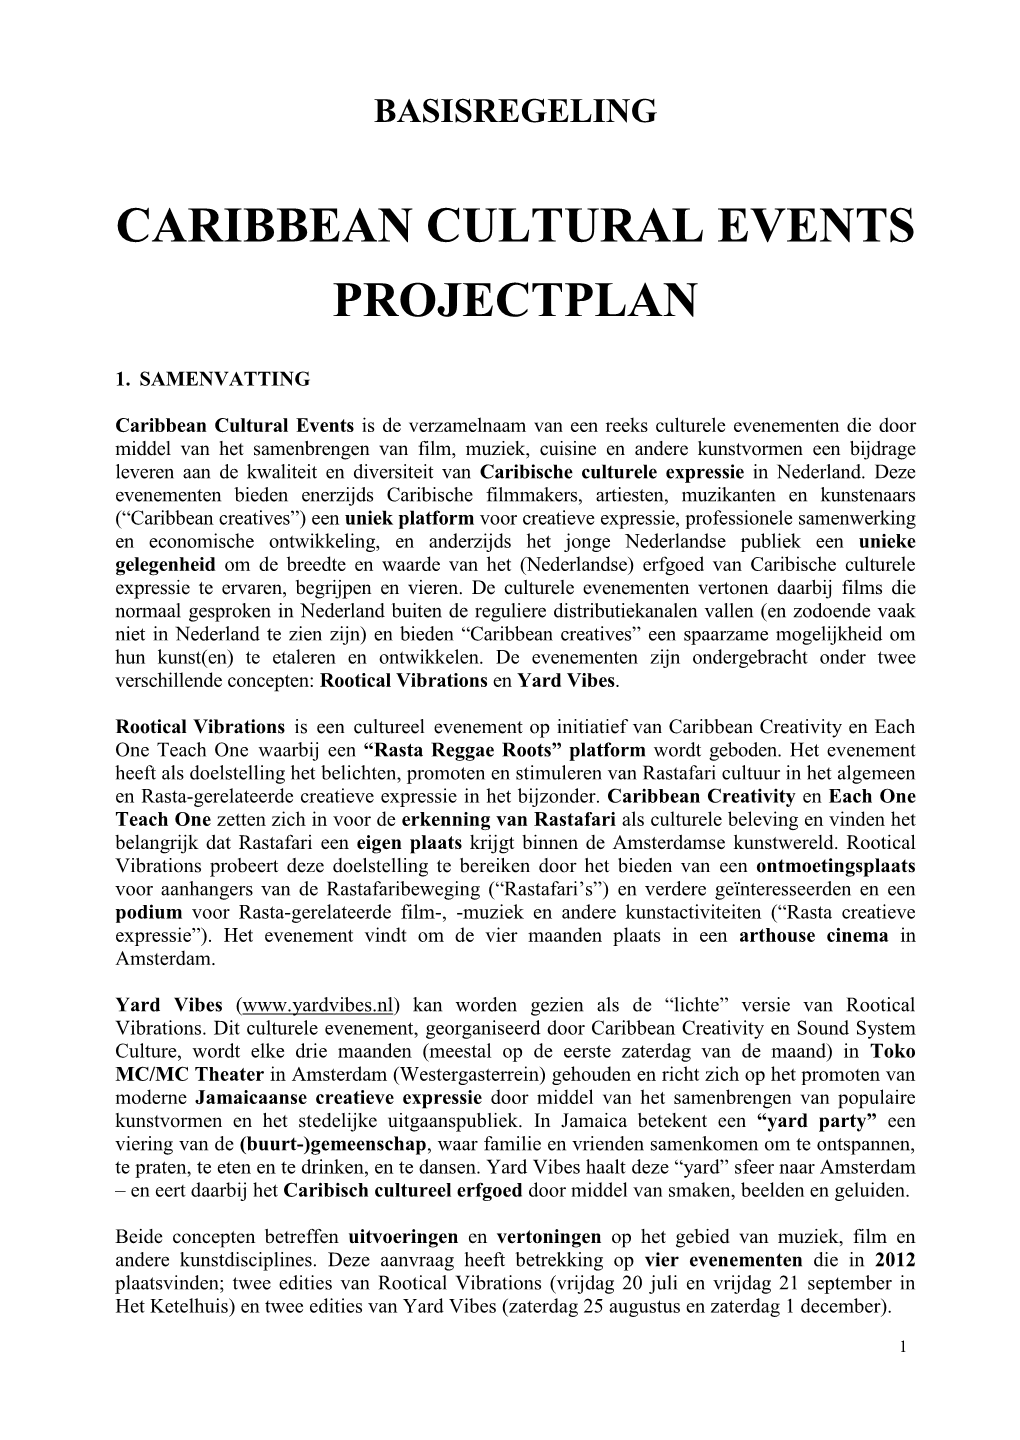 Caribbean Cultural Events Projectplan